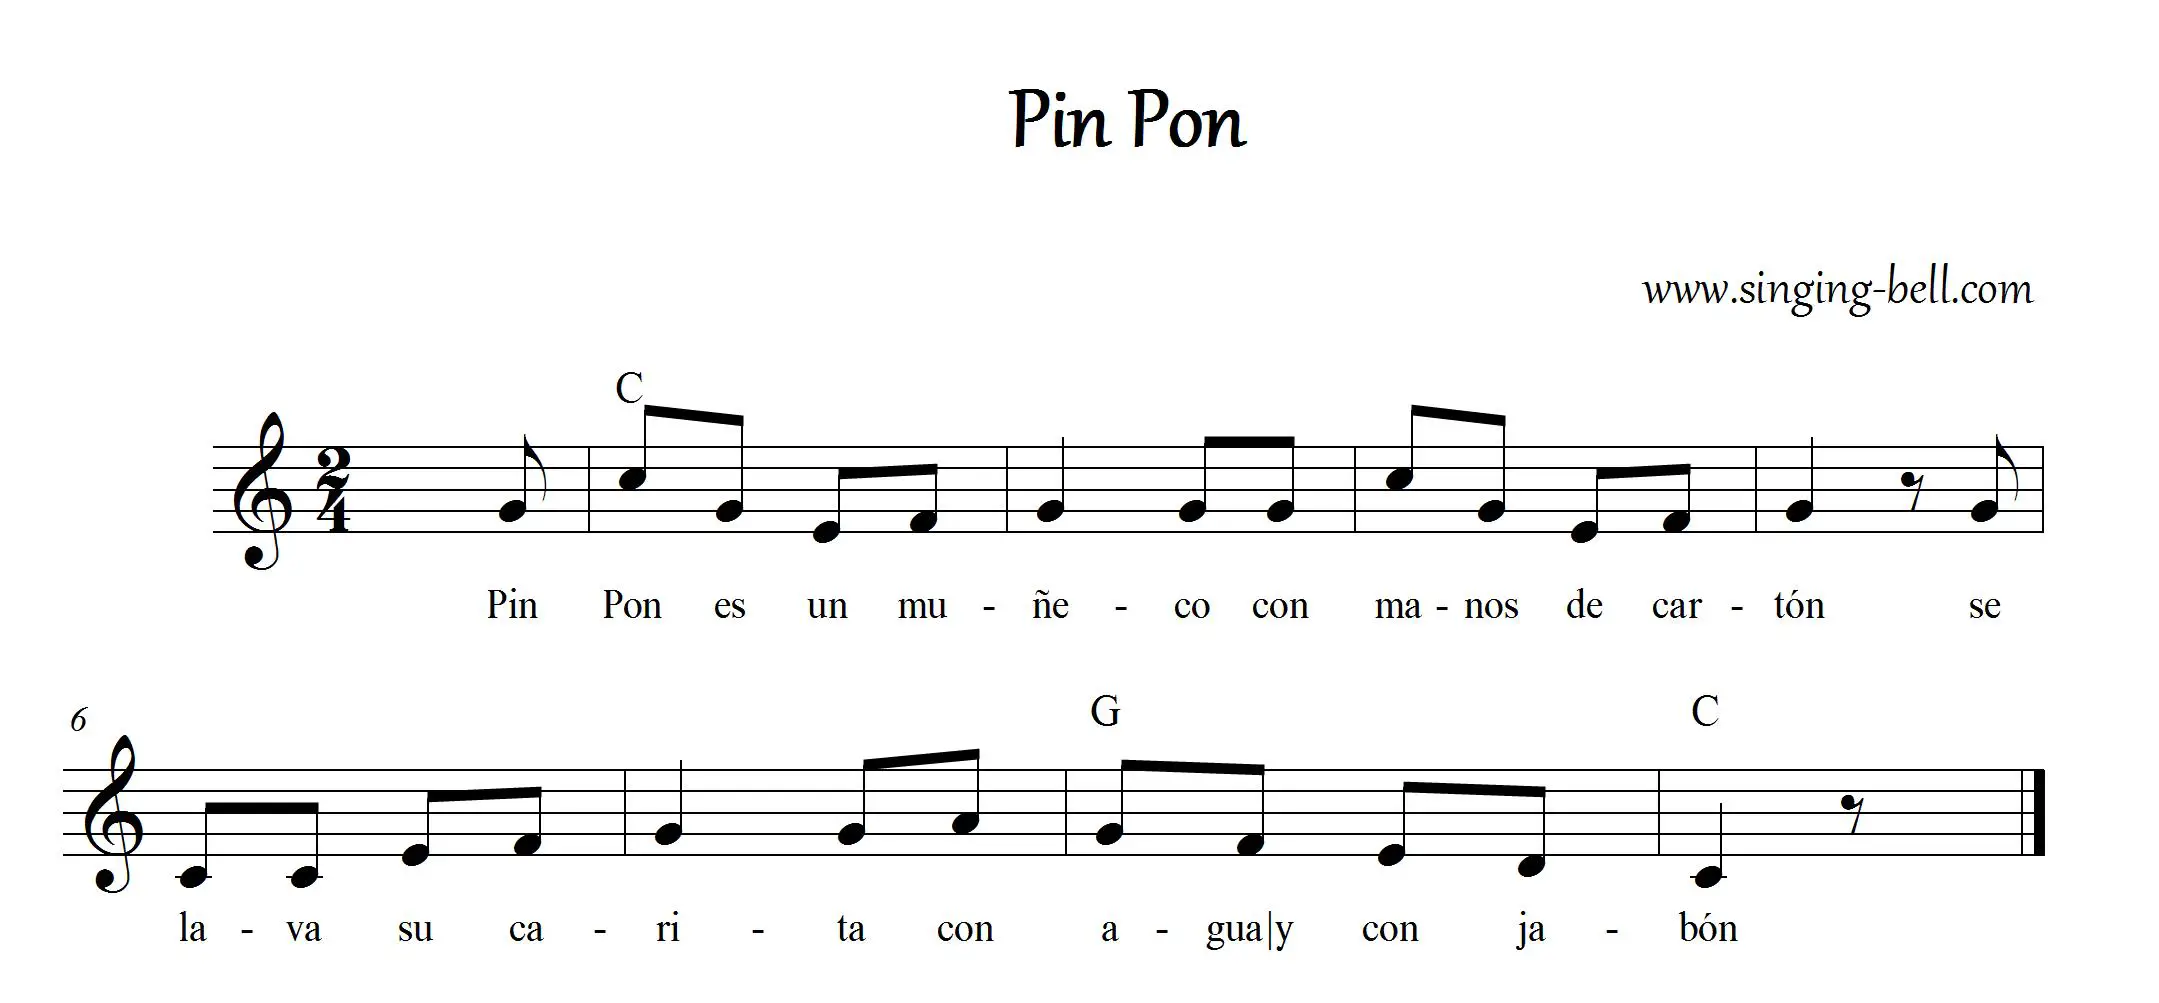 Pin Pon Music Sheet